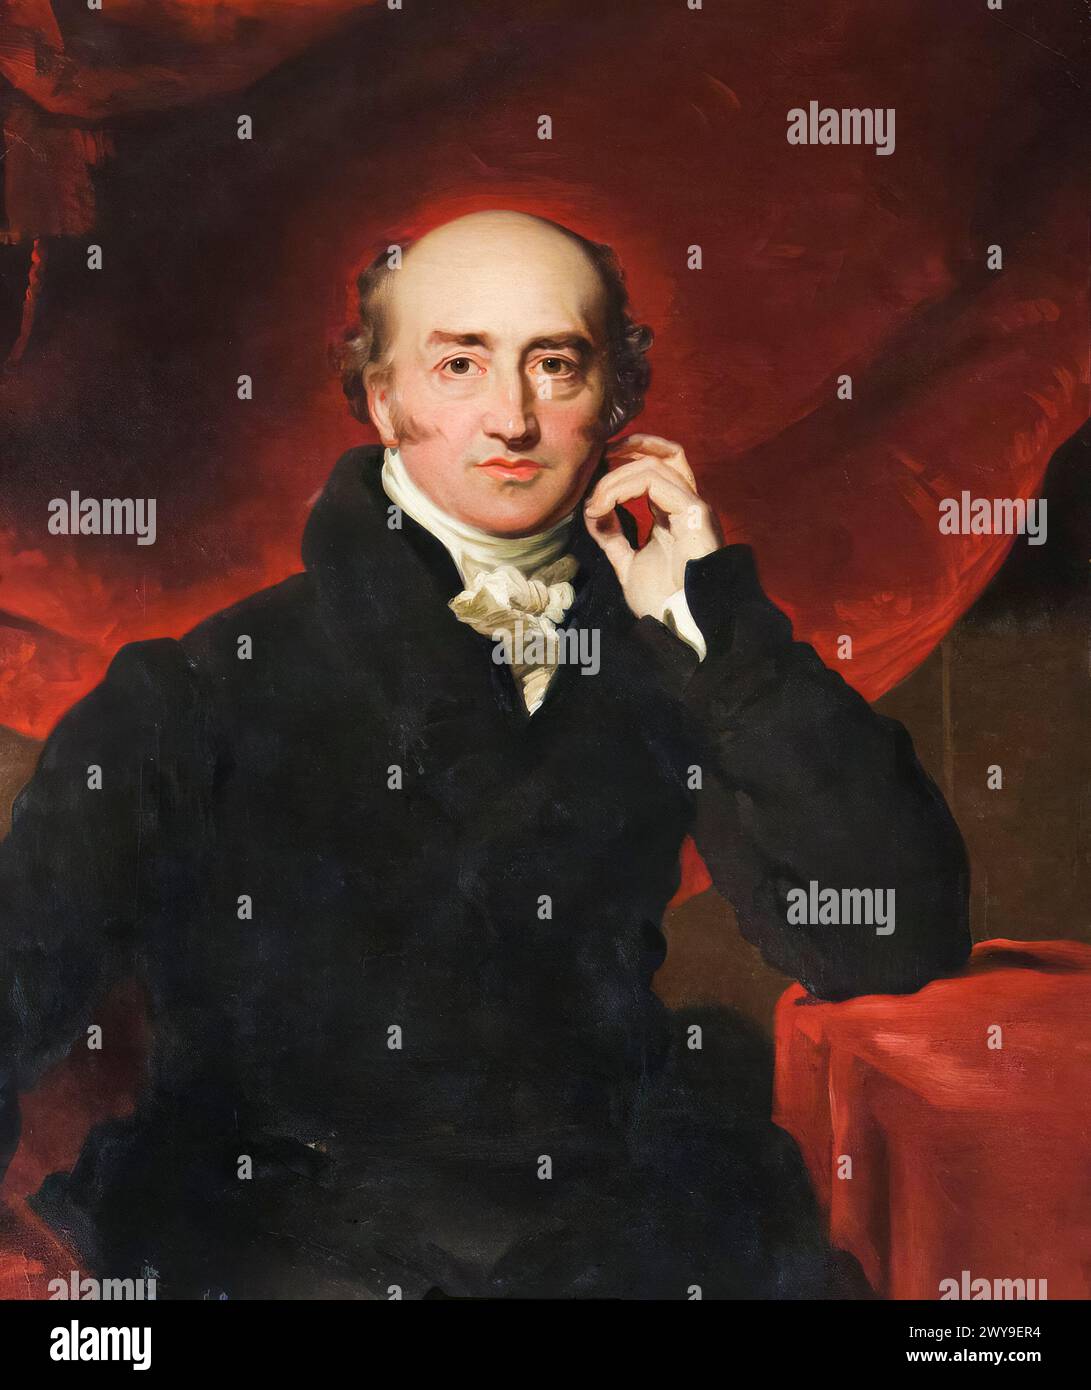 George Canning (1770-1827), politico Tory e primo ministro del Regno Unito aprile-agosto 1827, ritratto dipinto ad olio su tela dopo Sir Thomas Lawrence, 1822-1830 Foto Stock